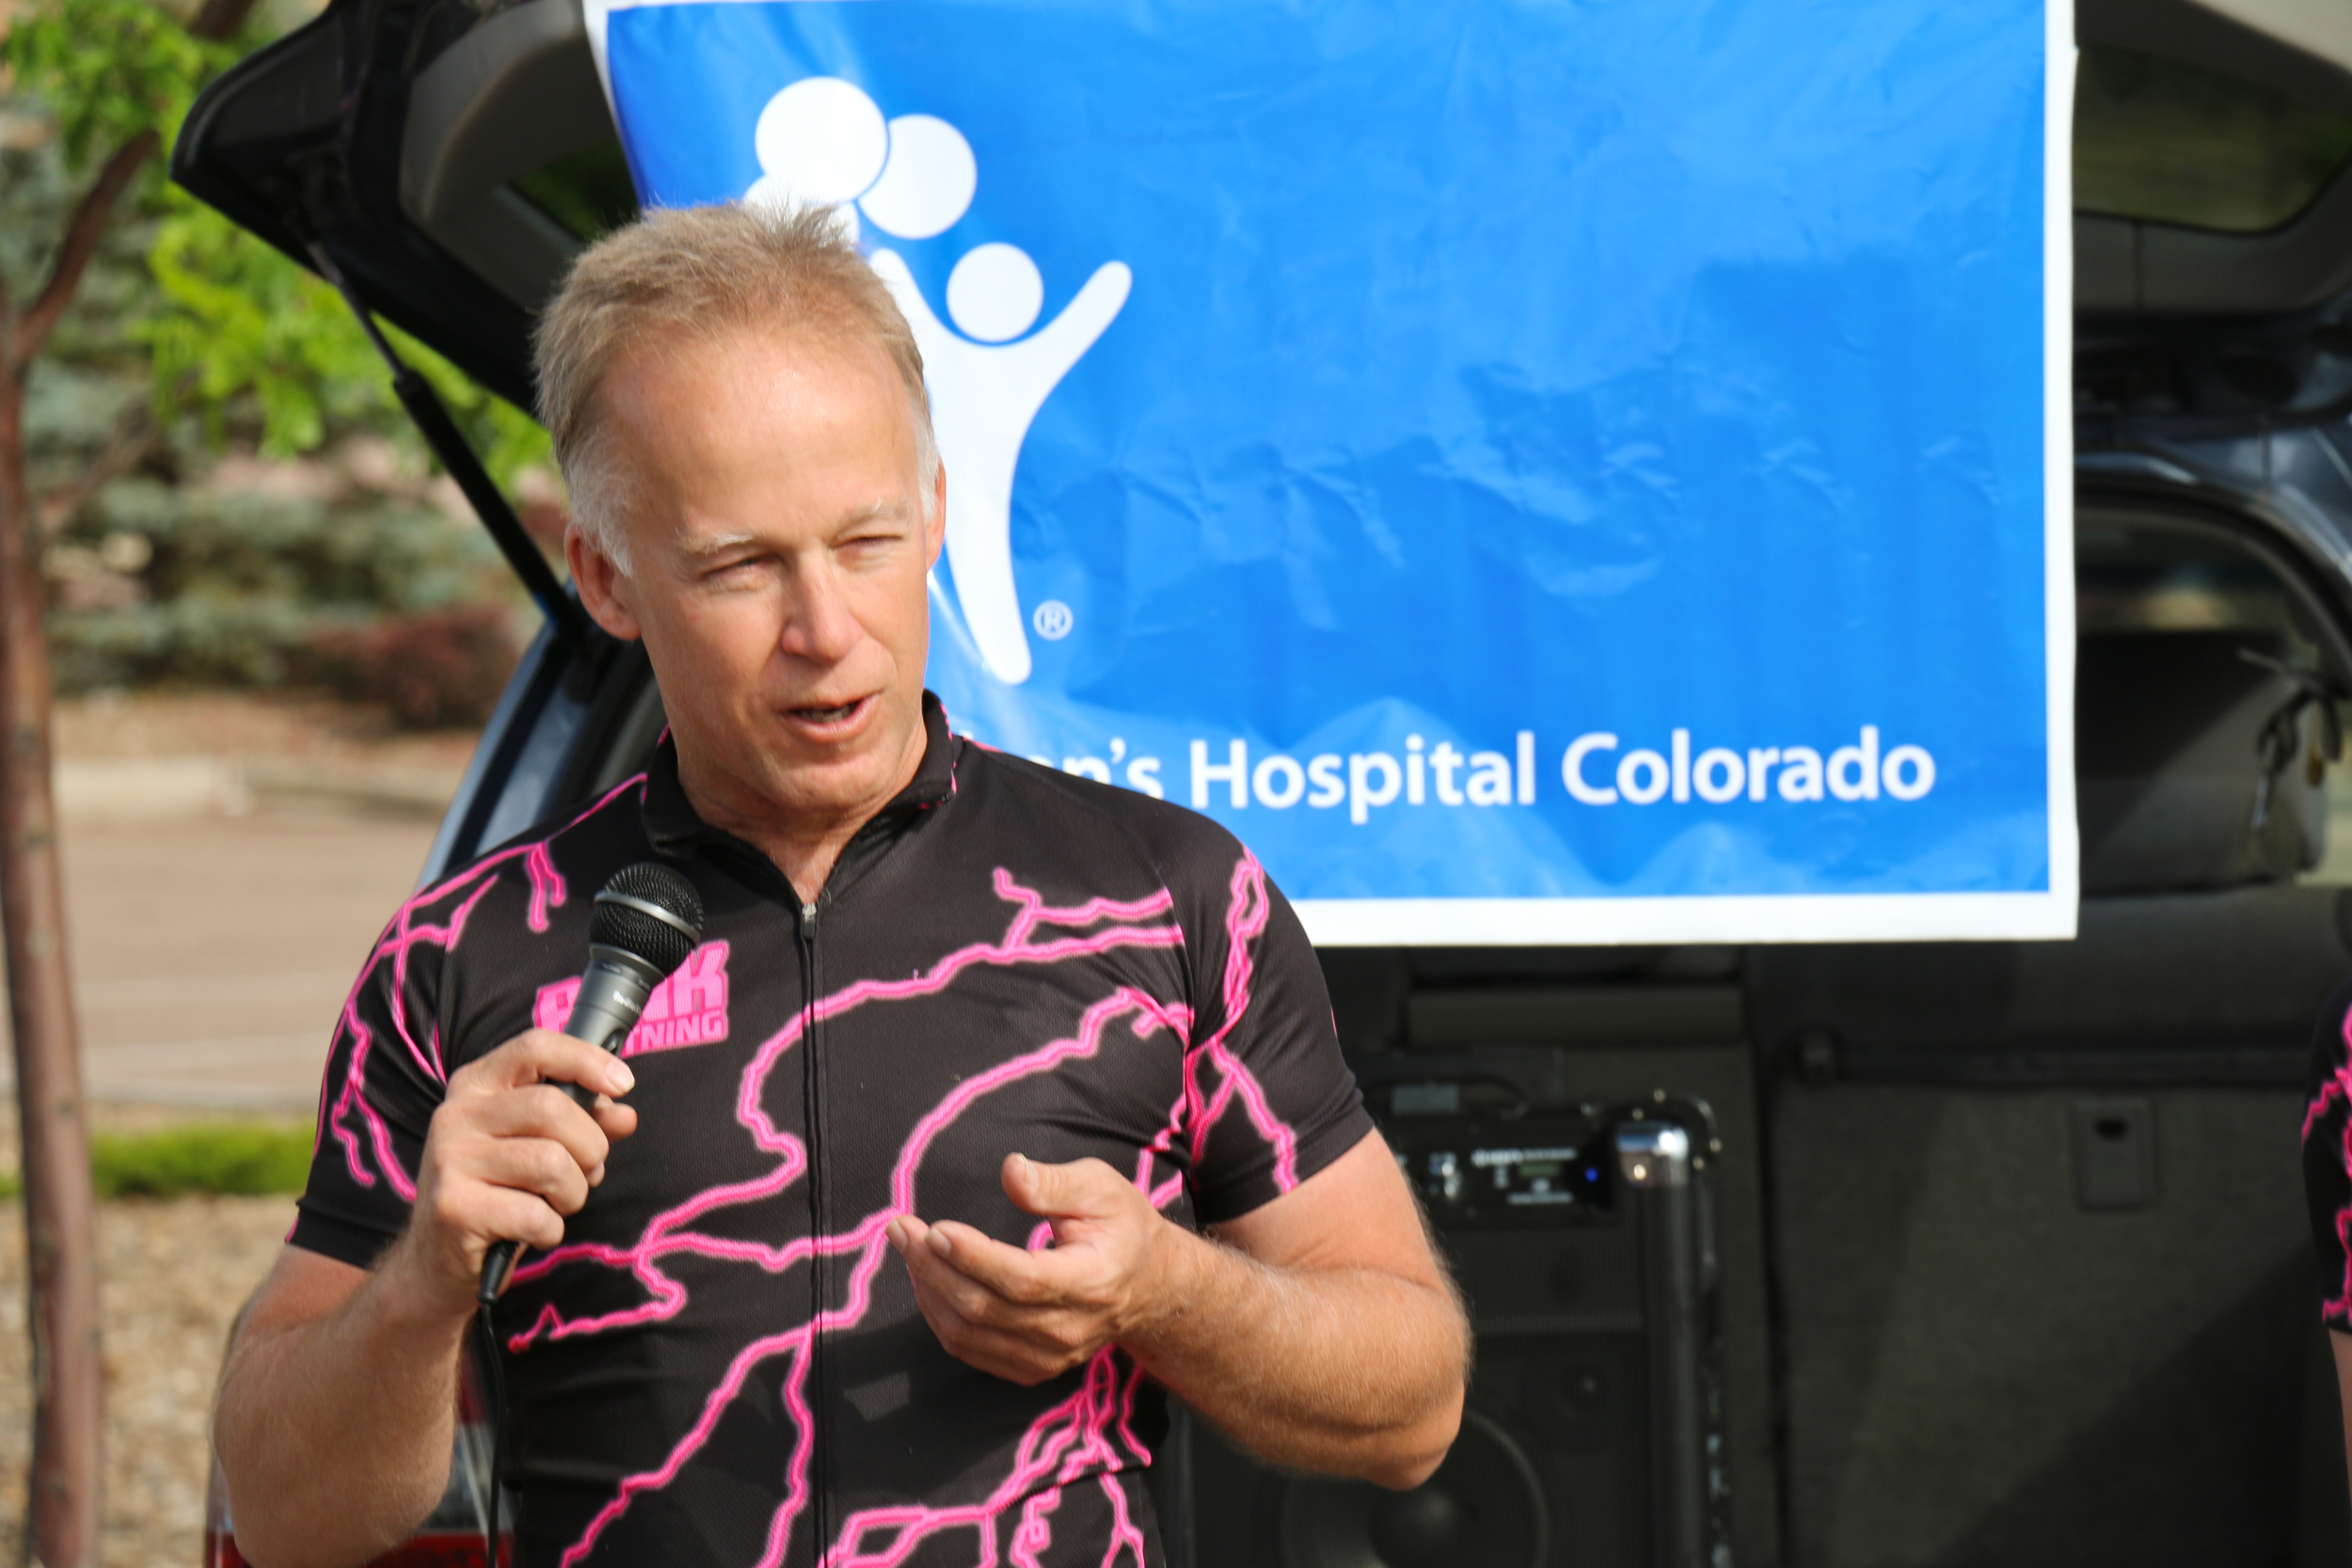 Steve thanks Children’s Hospital Colorado